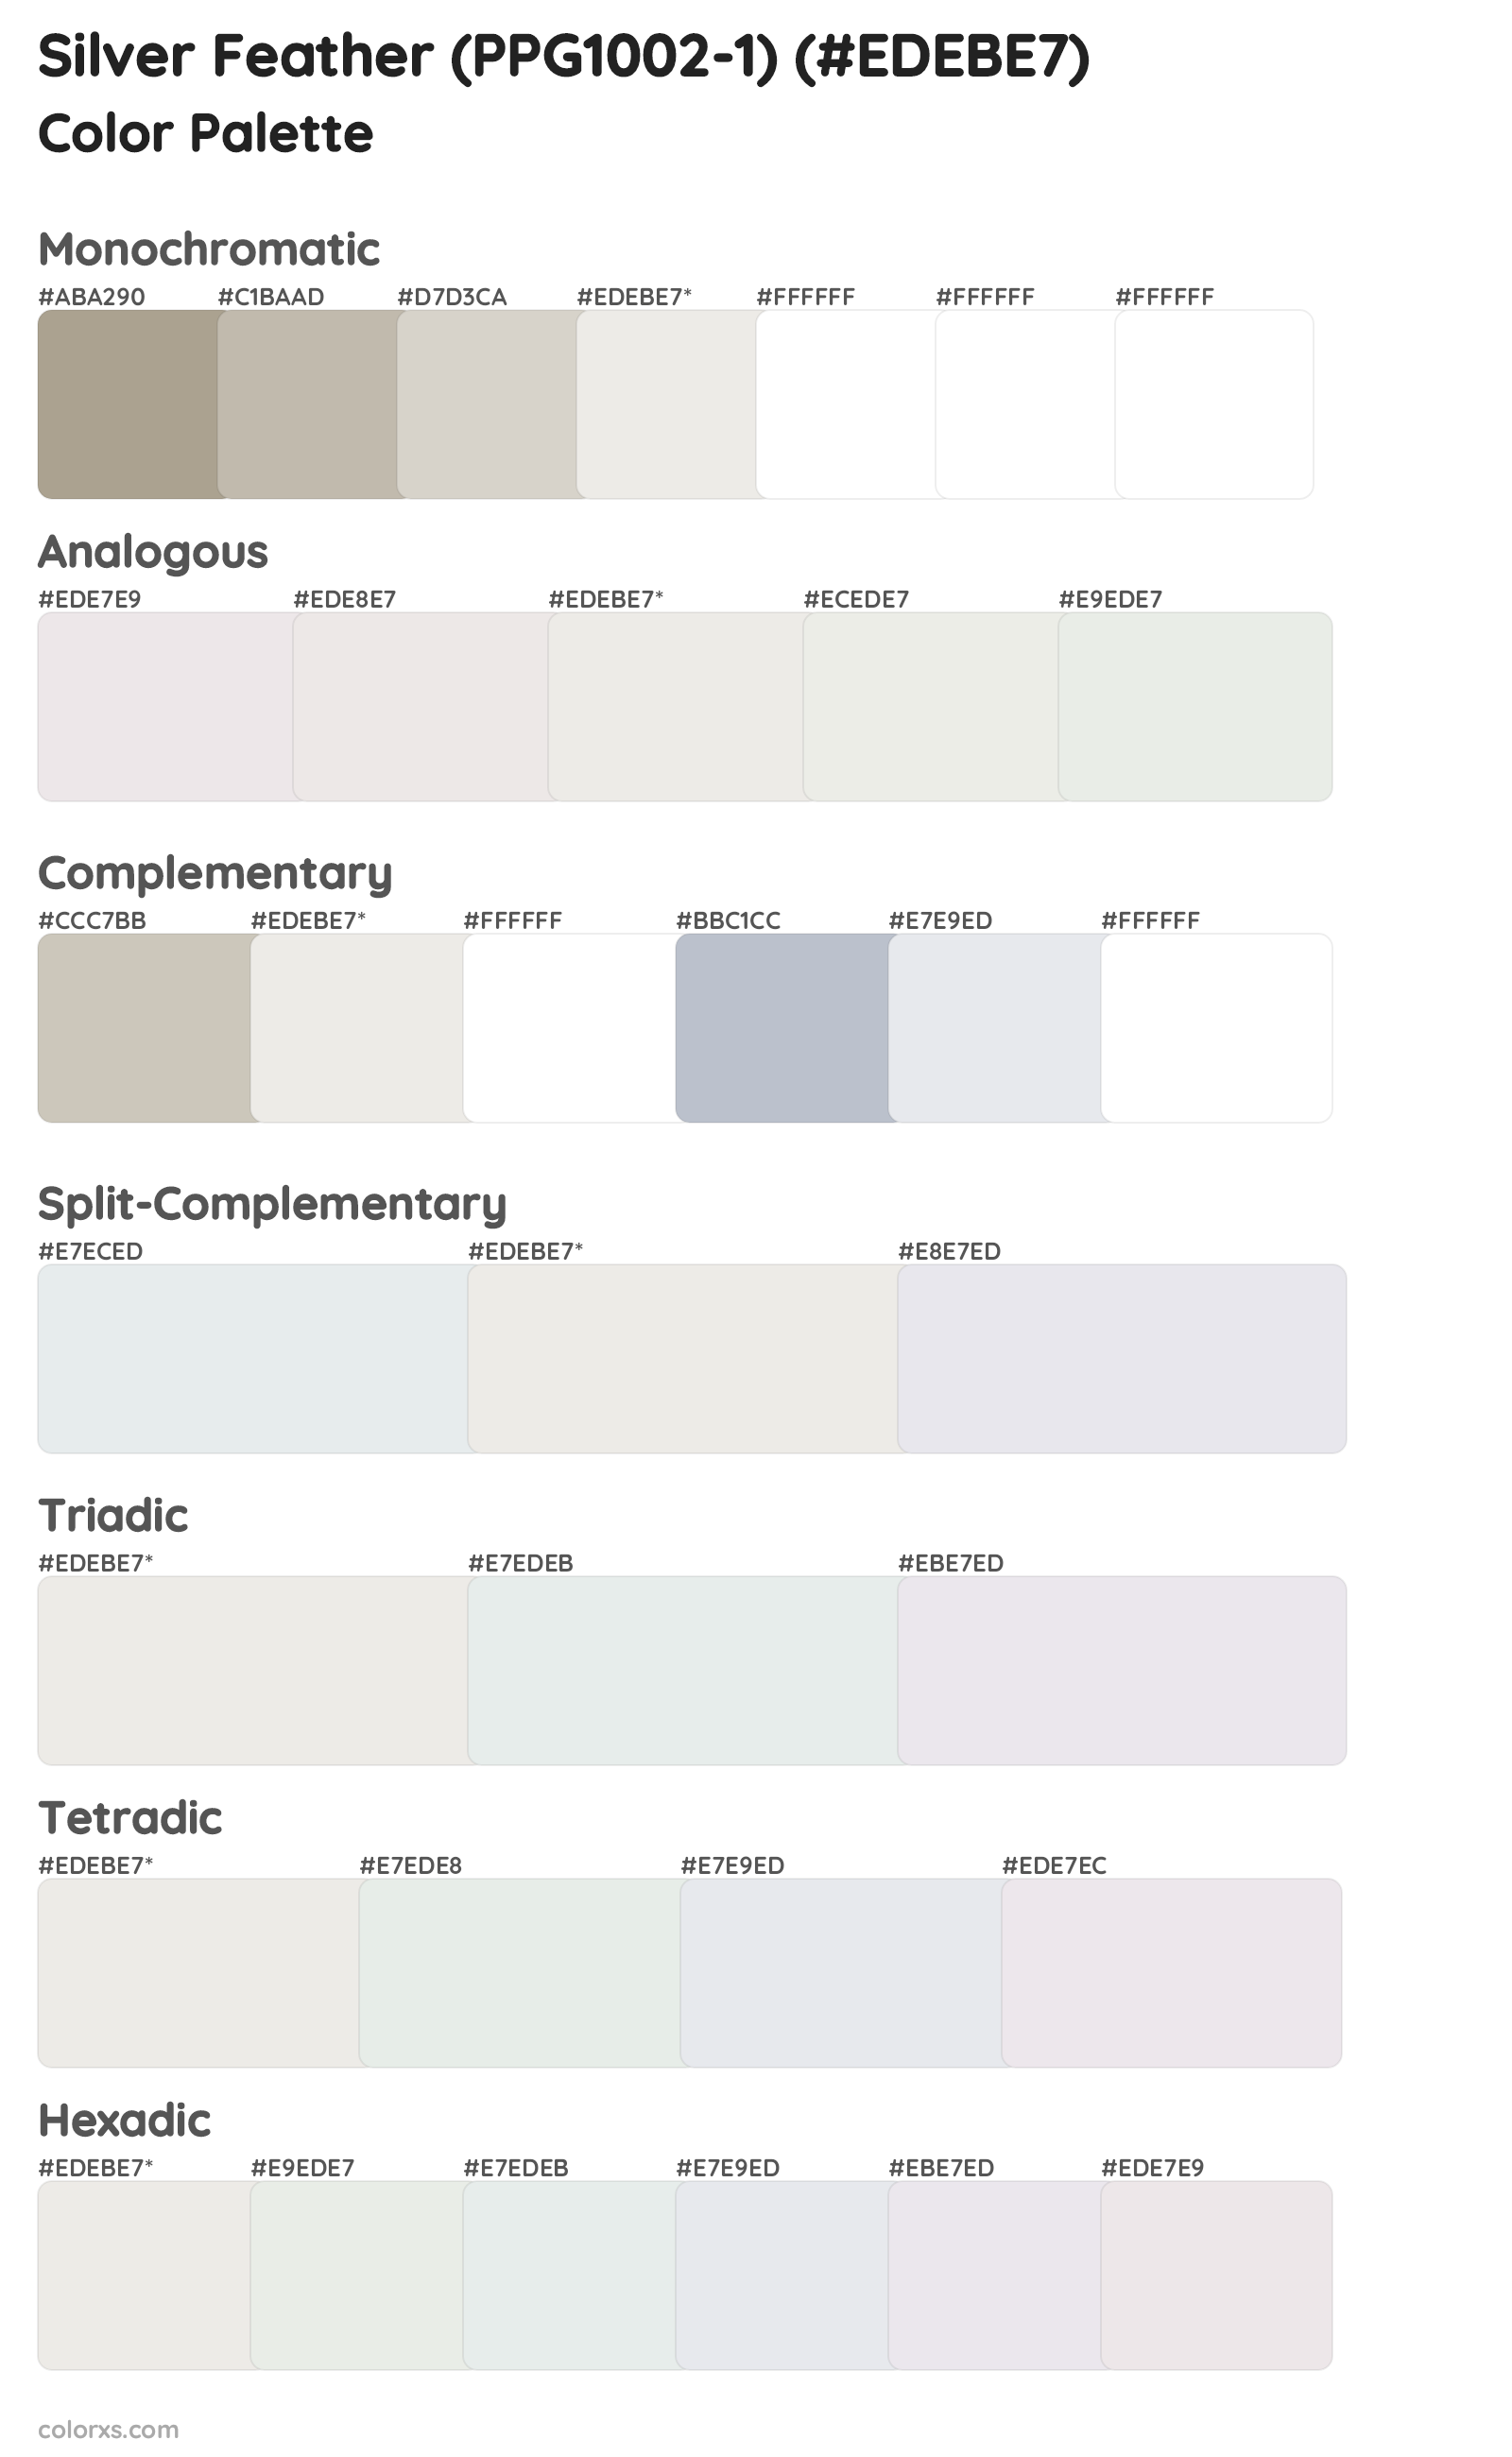 Silver Feather (PPG1002-1) Color Scheme Palettes